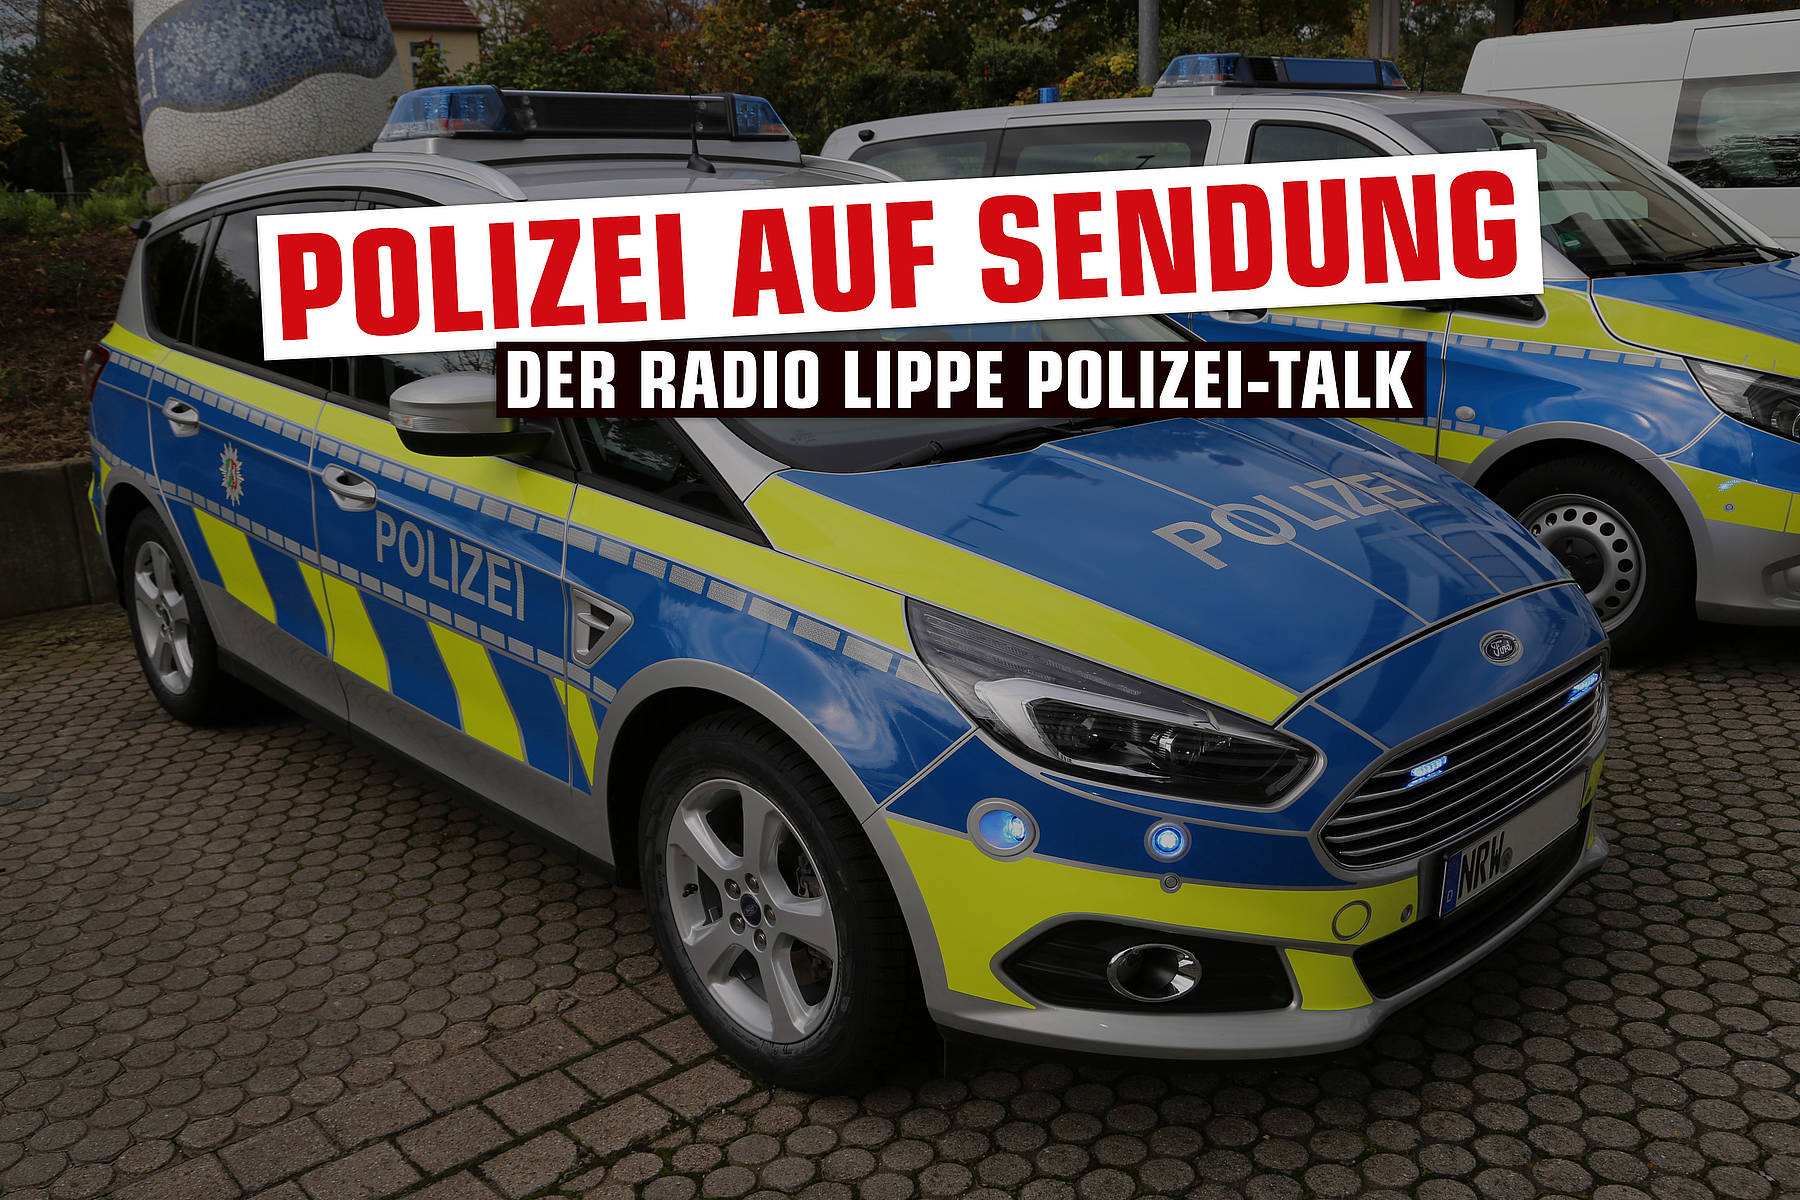 Der Radio Lippe Polizei-Talk